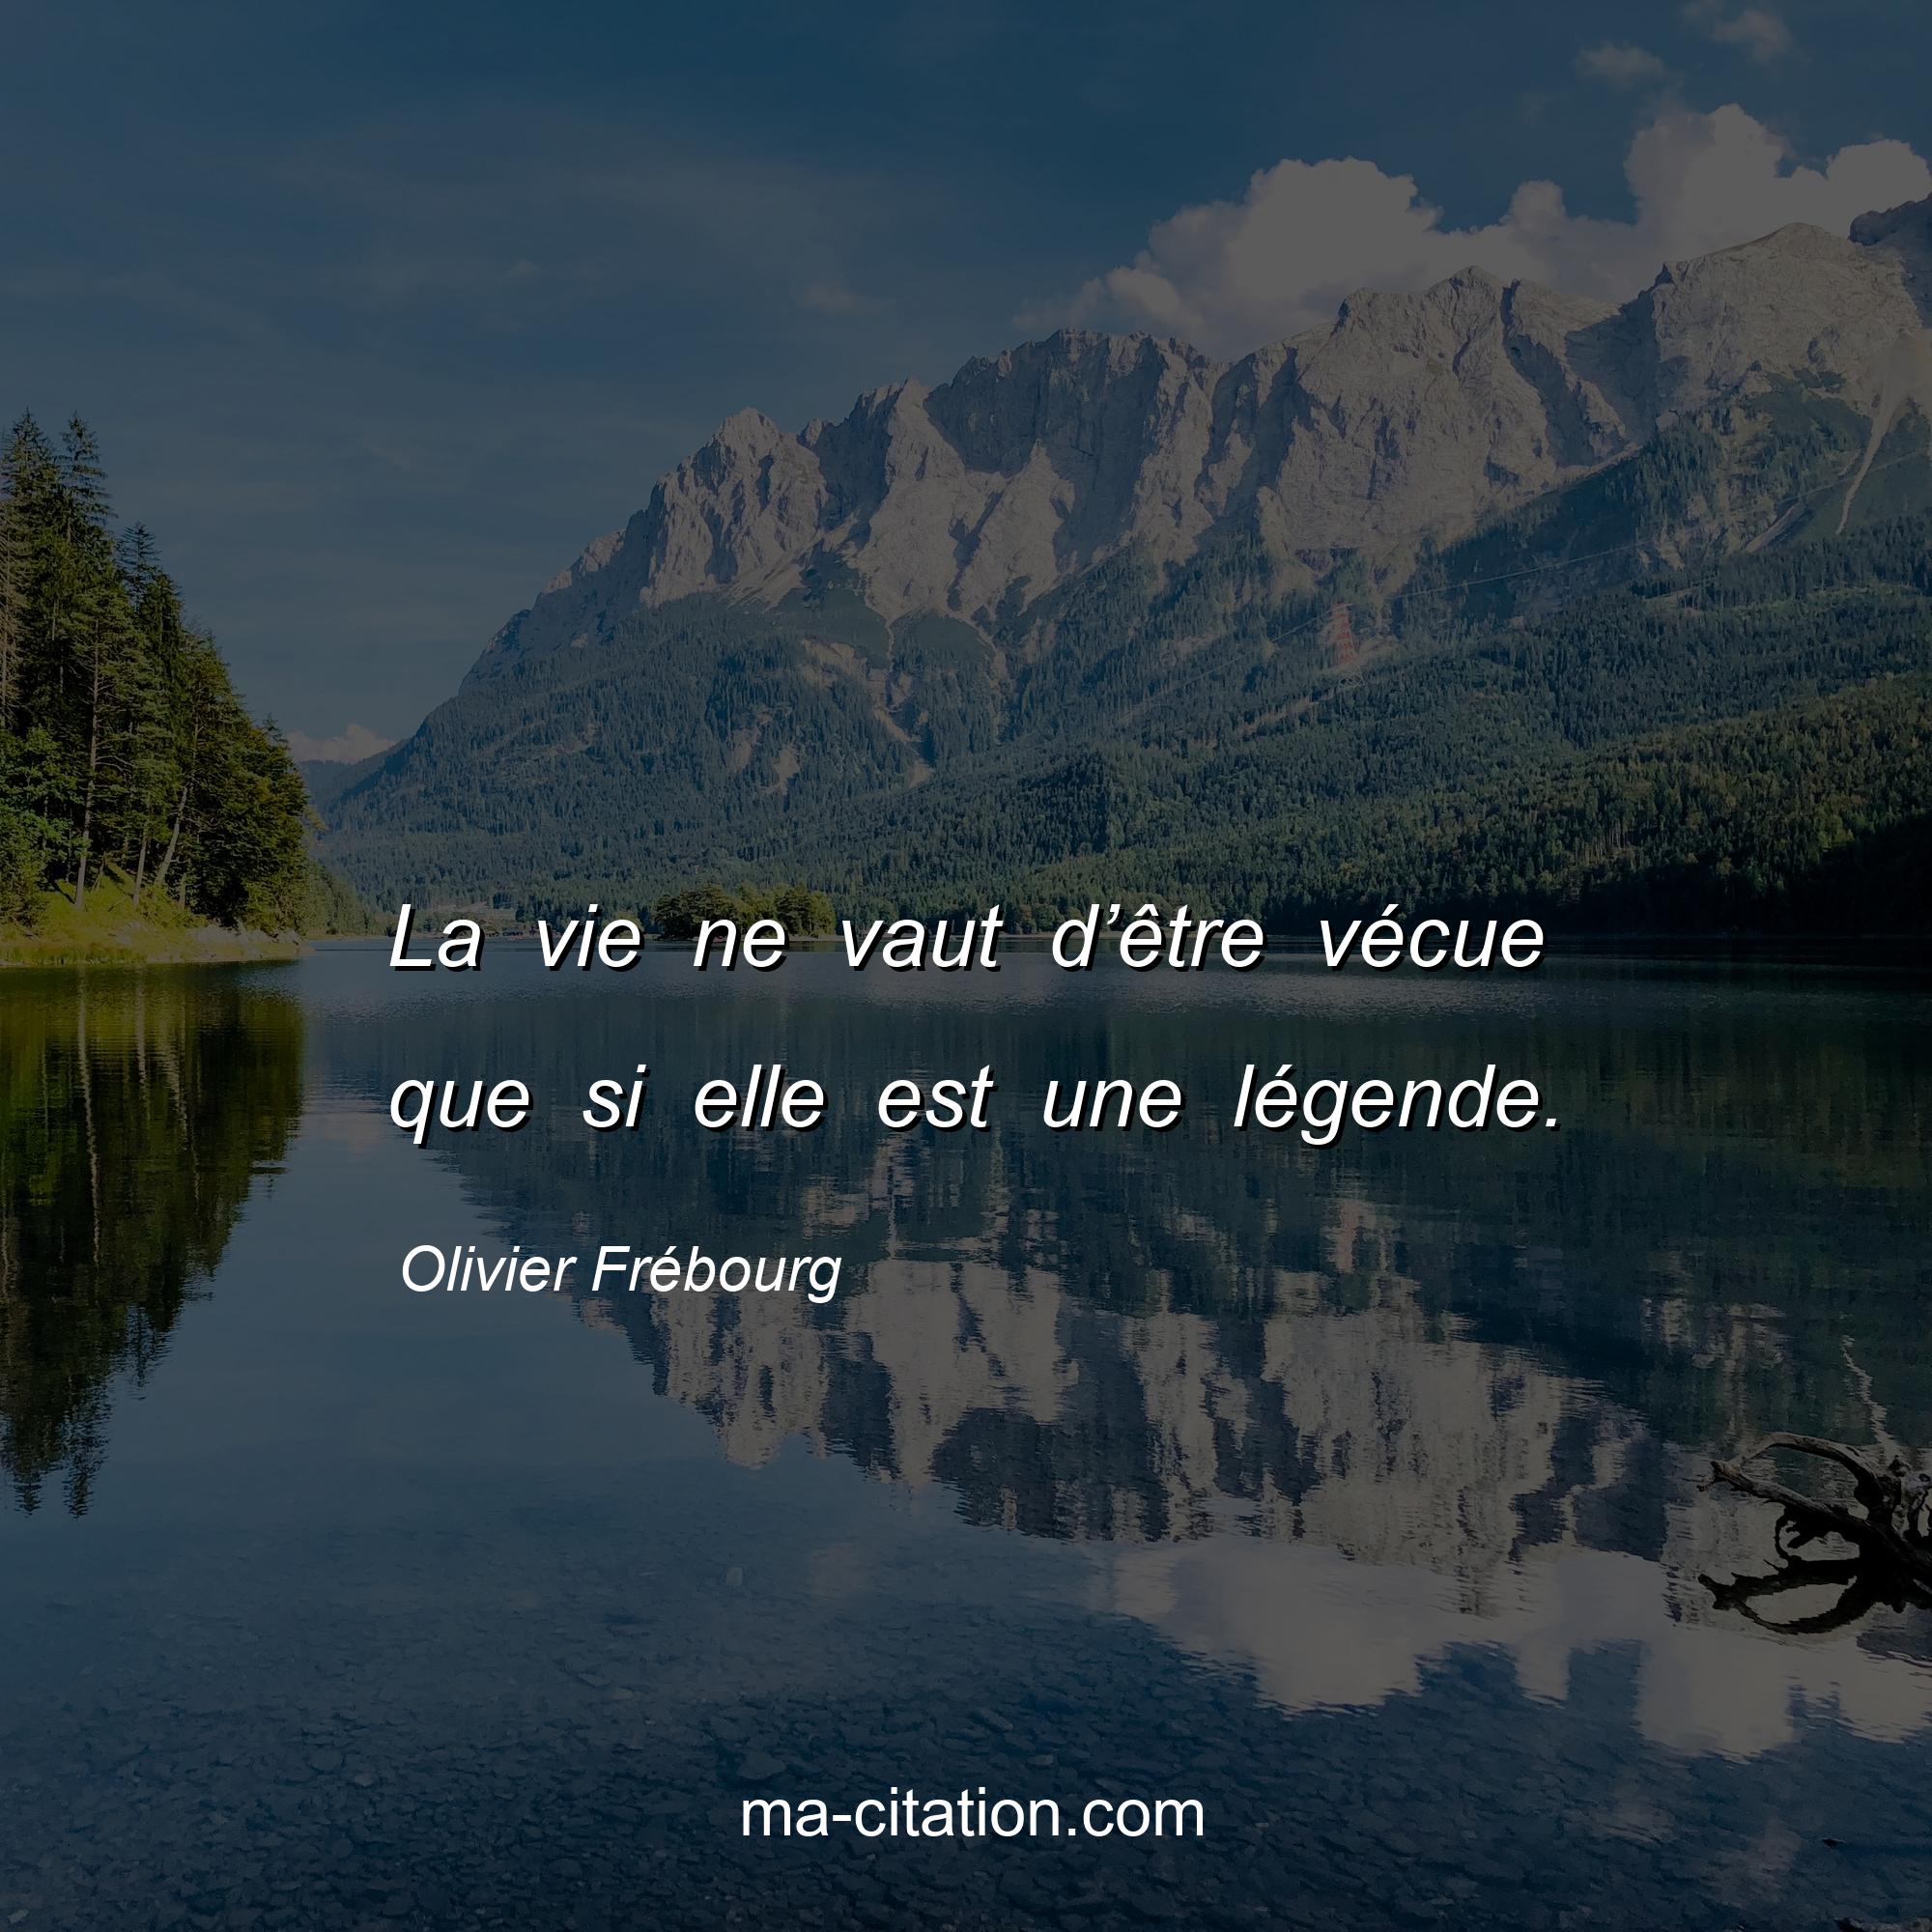 Olivier Frébourg : La vie ne vaut d’être vécue que si elle est une légende.